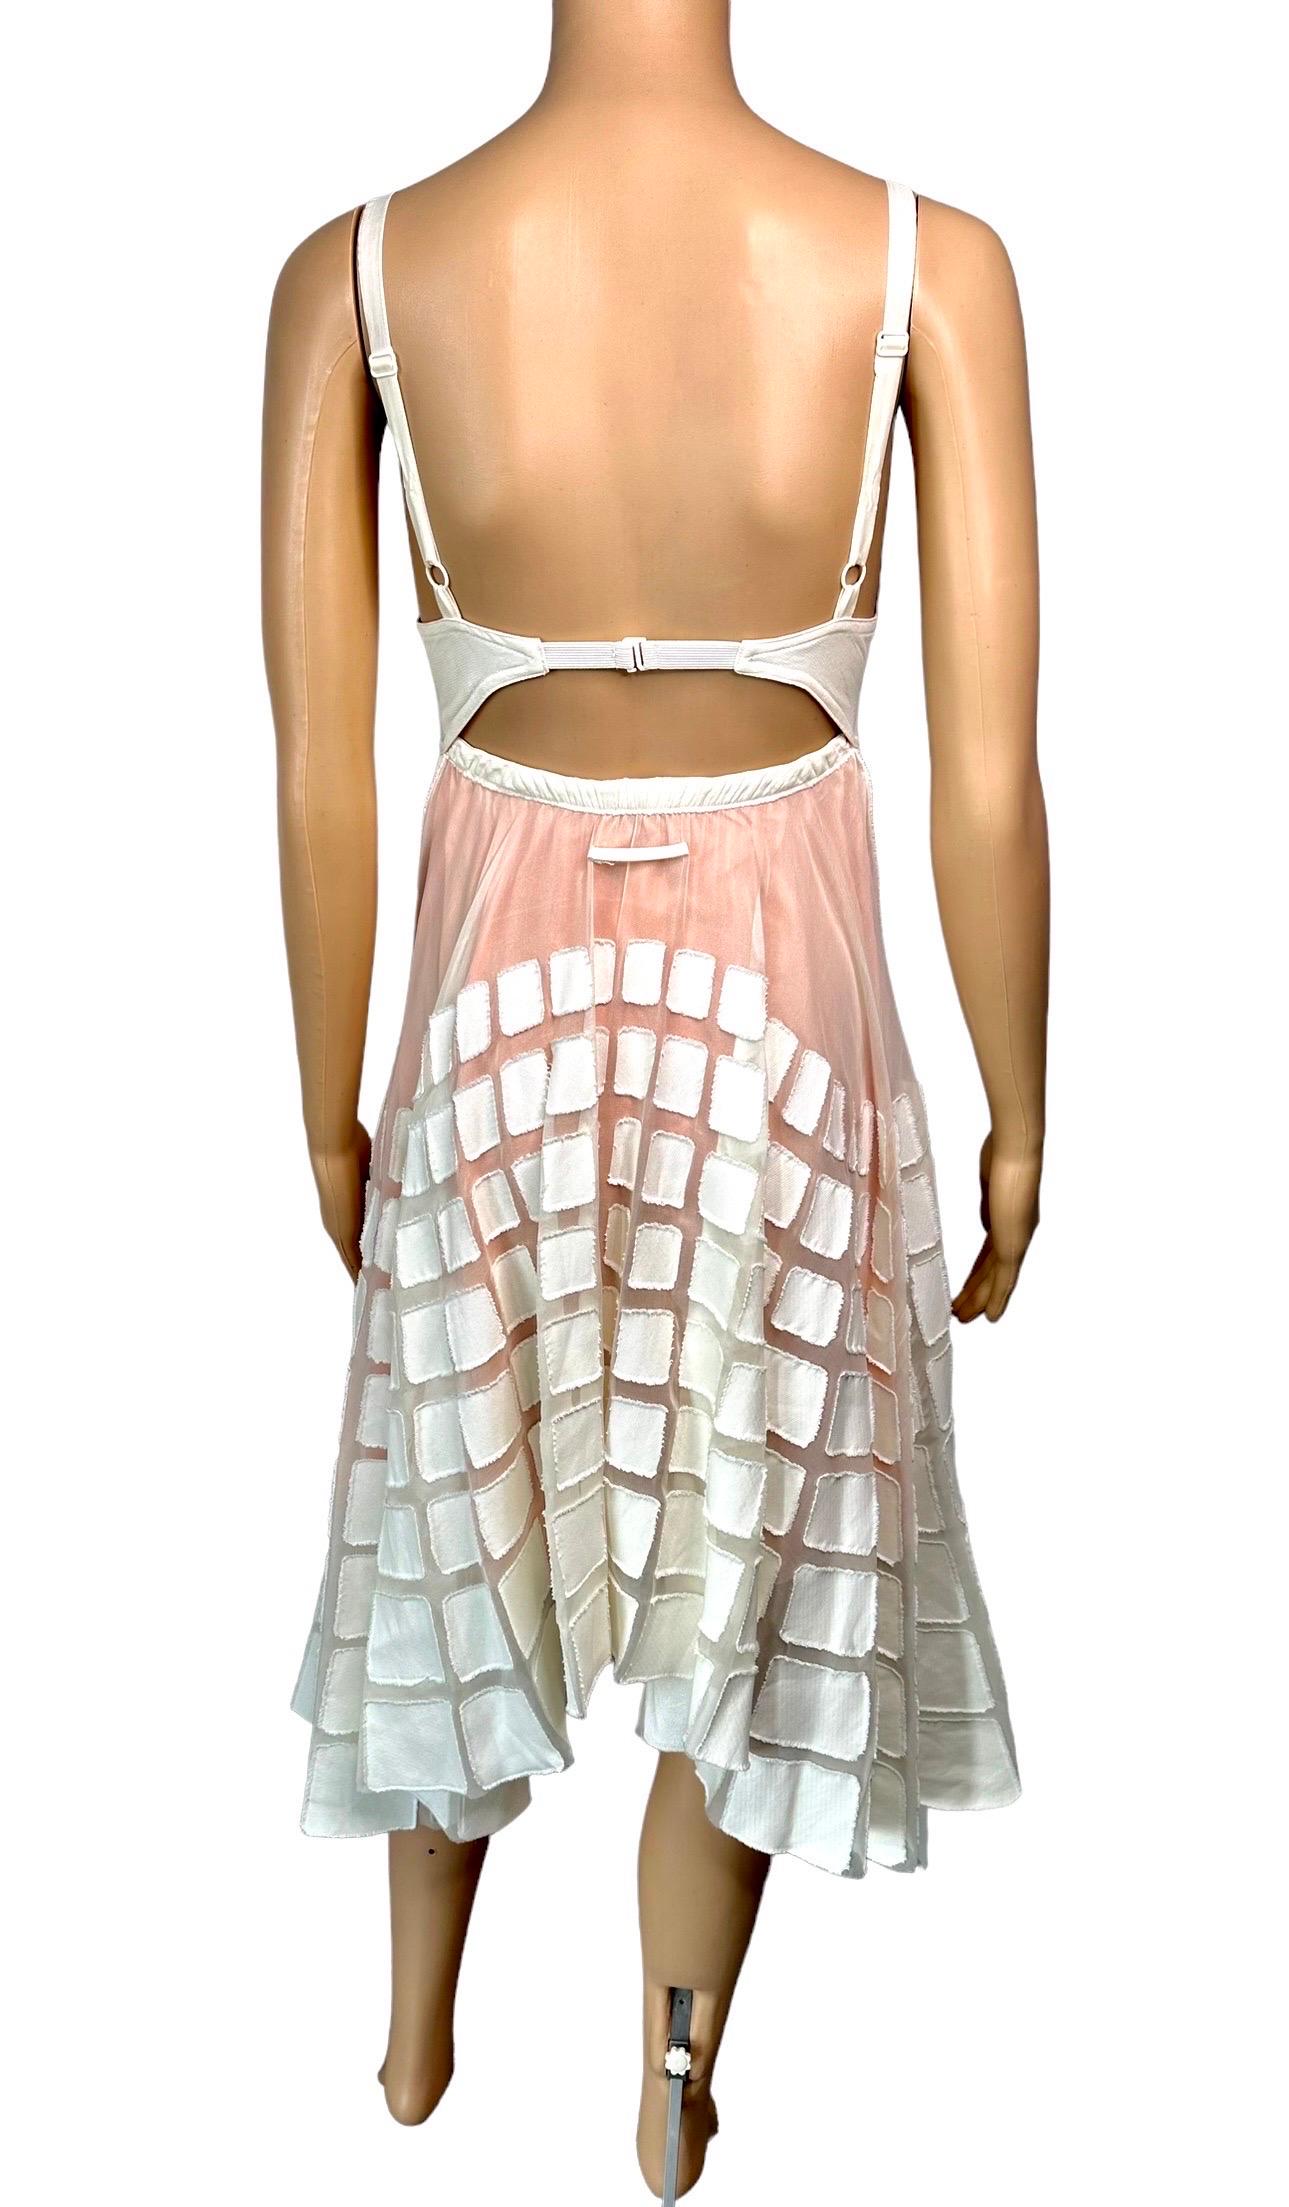 Jean Paul Gaultier S/S 2010 Runway Cone Bra Bustier Cutout Sheer Dress  For Sale 5